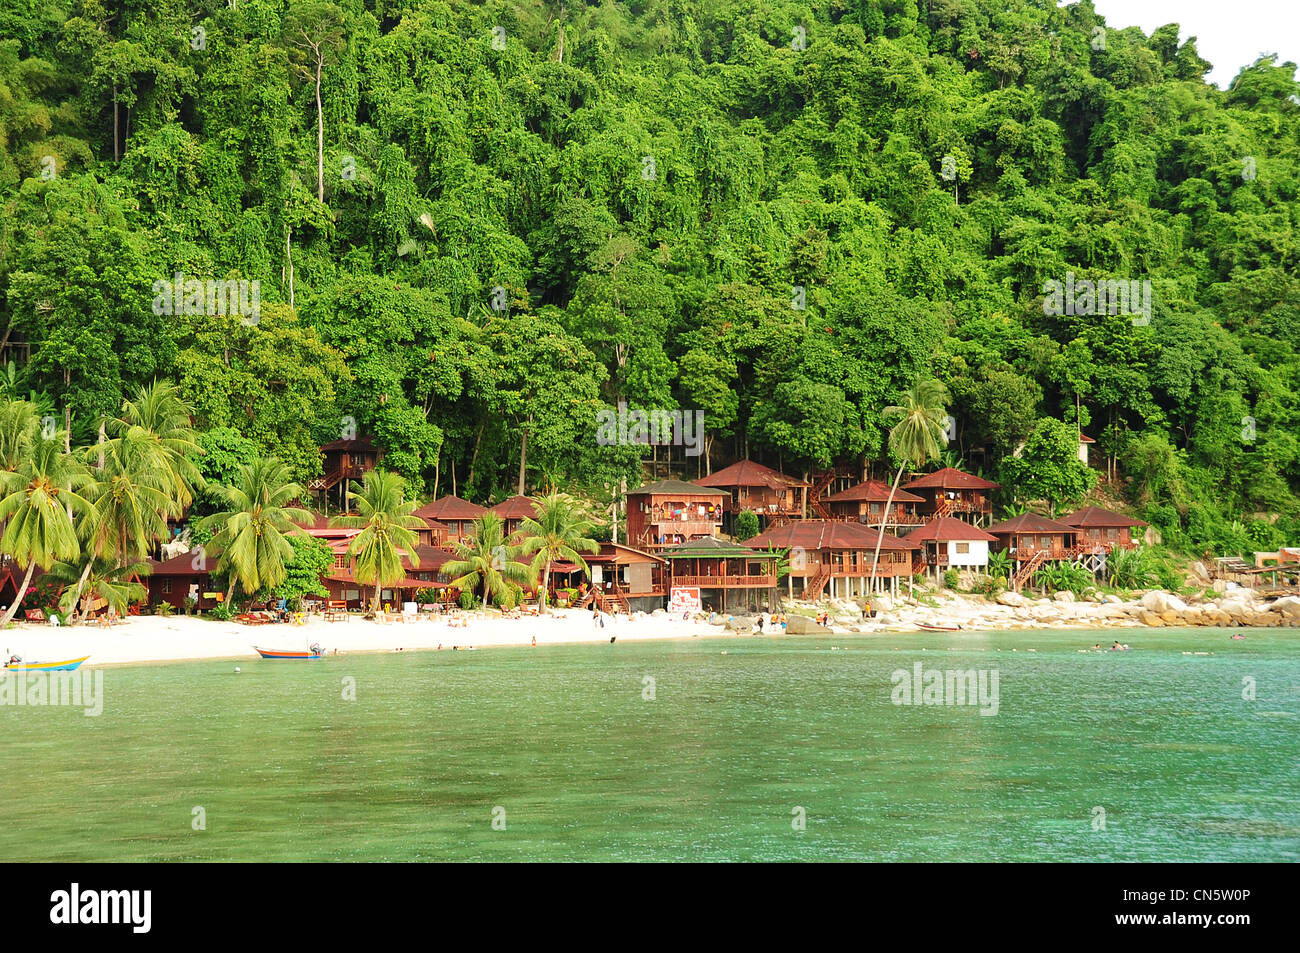 Malaysia, Stato di Terengganu, Perhentian Islands, Perhentian Kecil, hotel di legno nella foresta Foto Stock